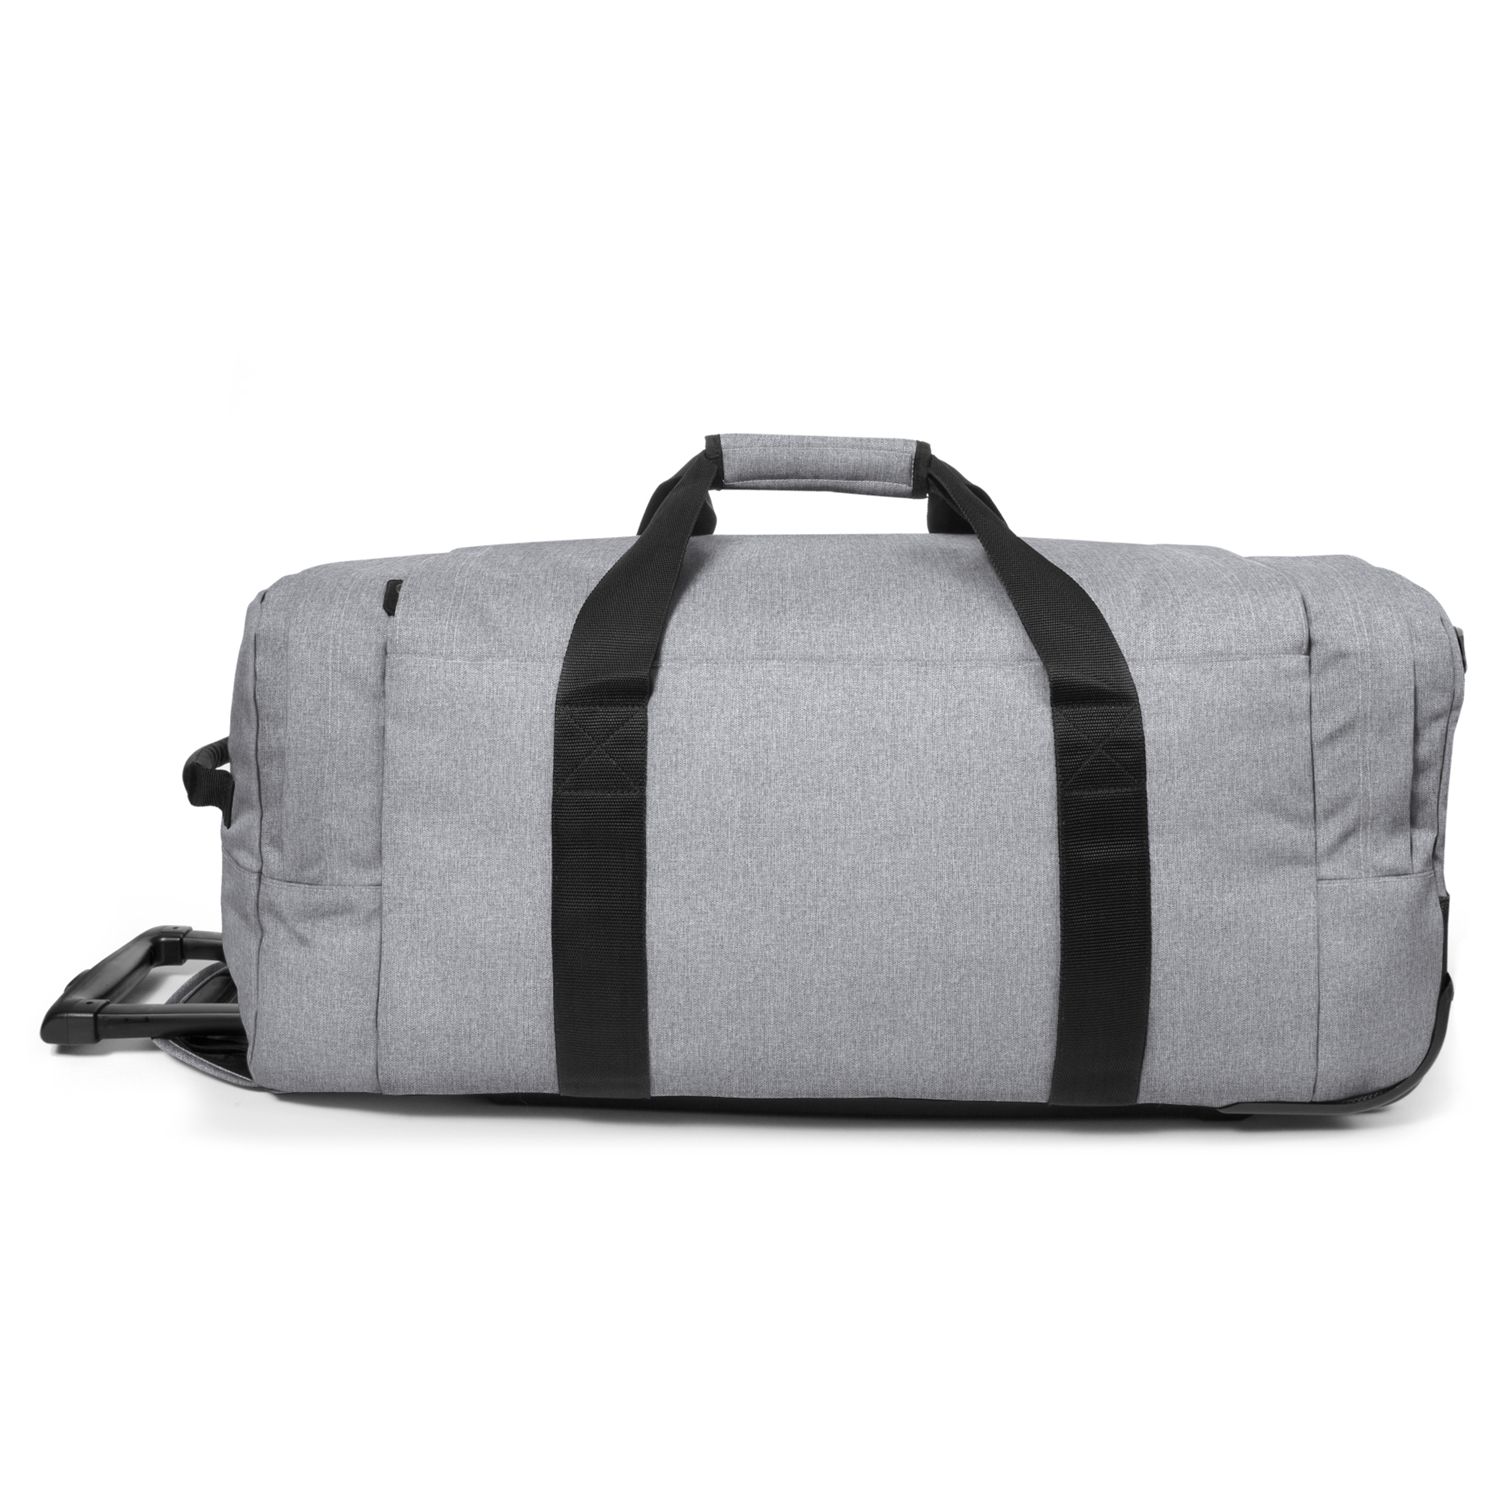 Eastpak Leatherface Medium 2-Wheel Duffle Bag, Sunday Grey